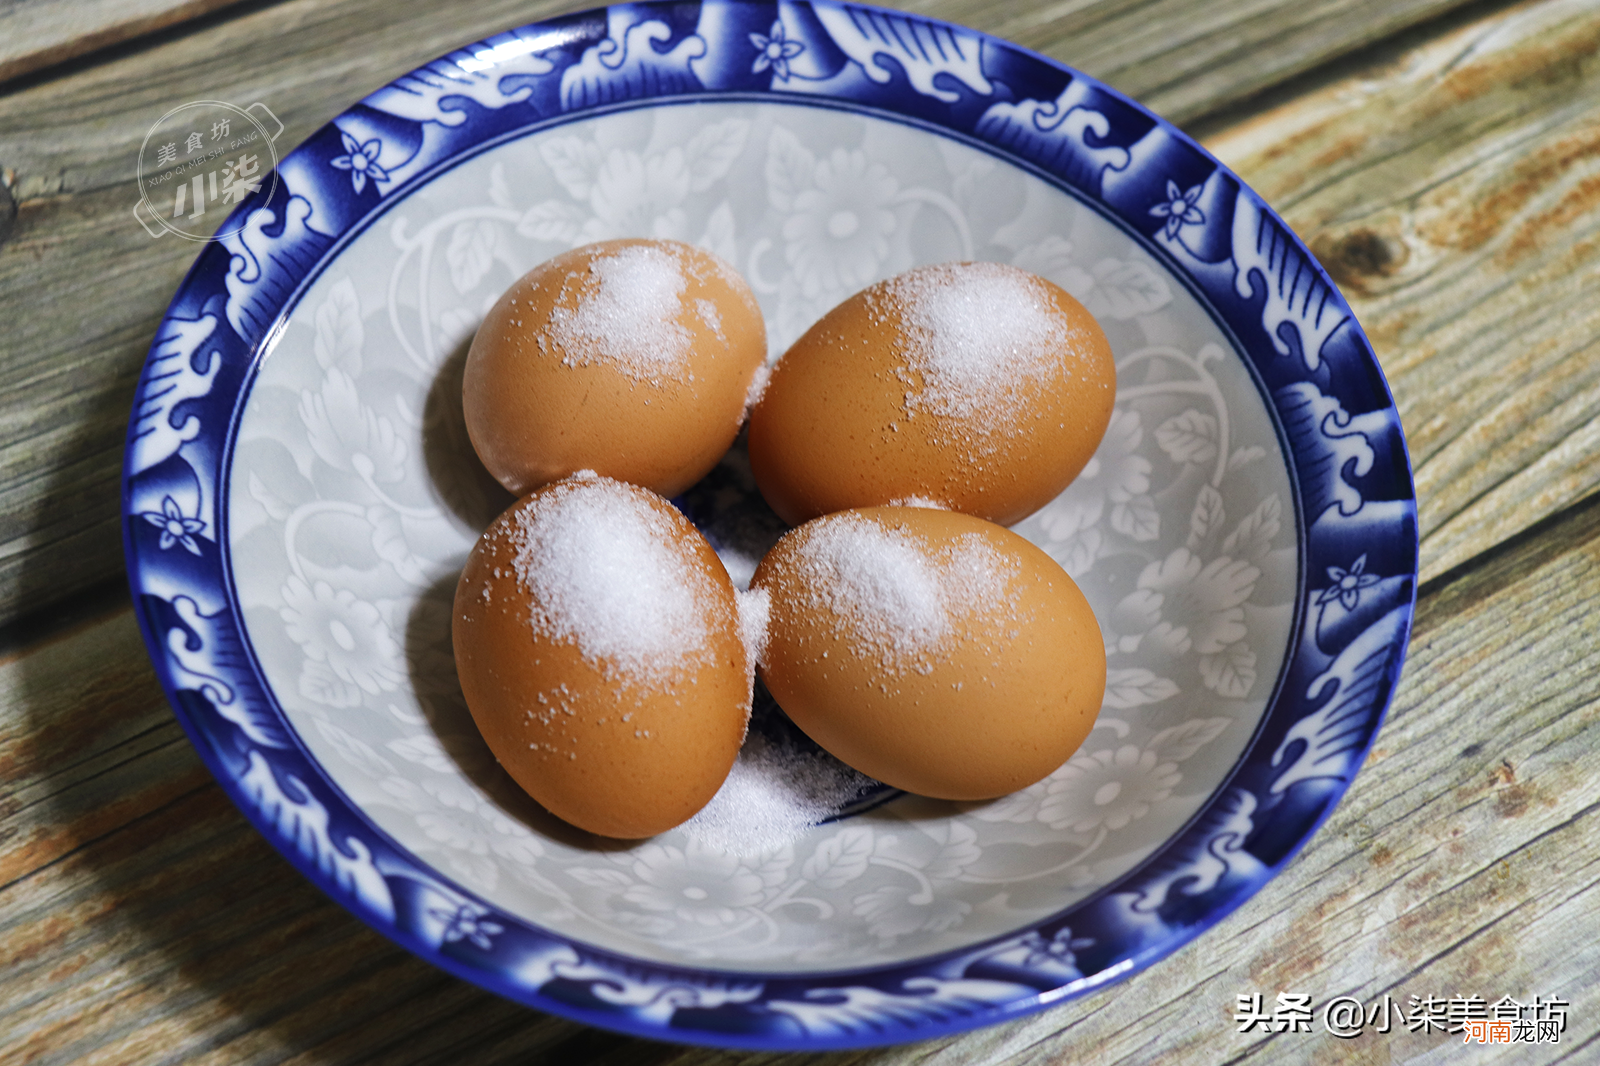 最近流行的煮鸡蛋 网红煮鸡蛋